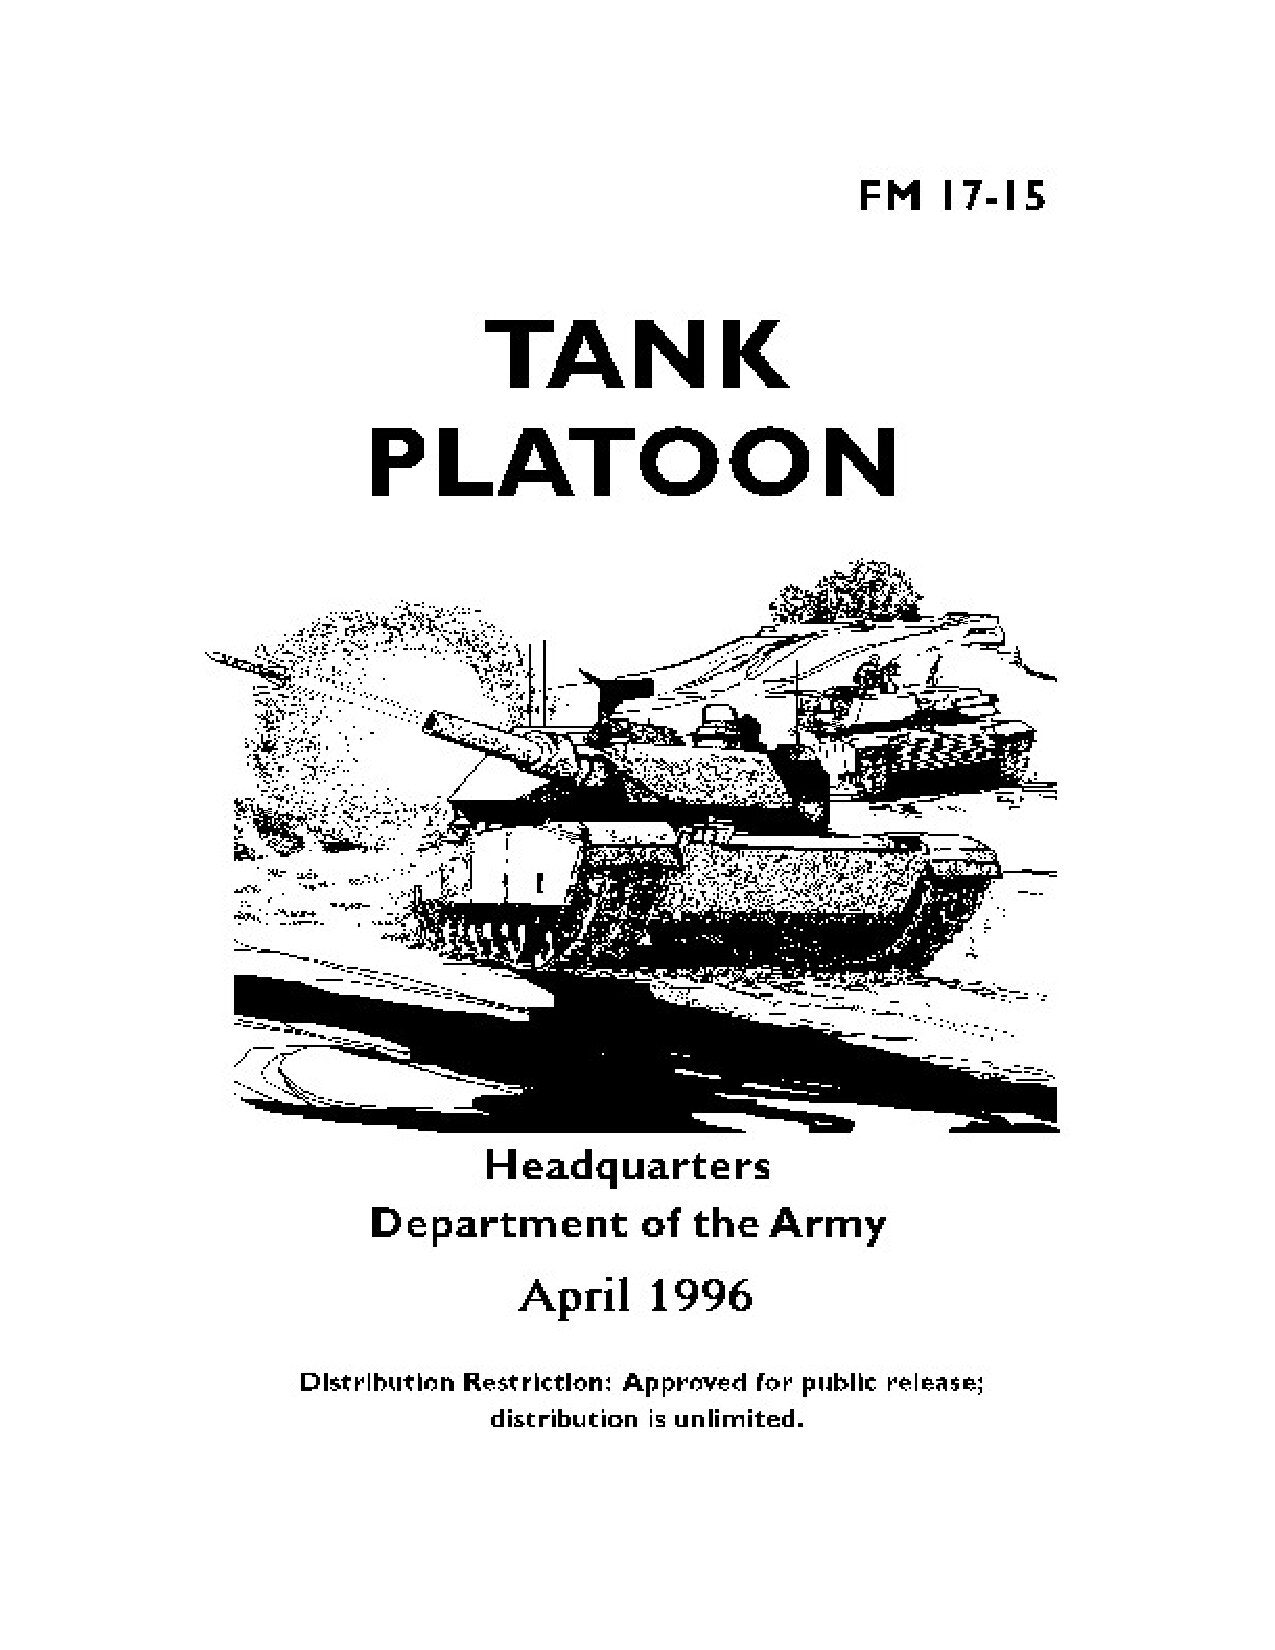 FM 17-15 Tank Platoon